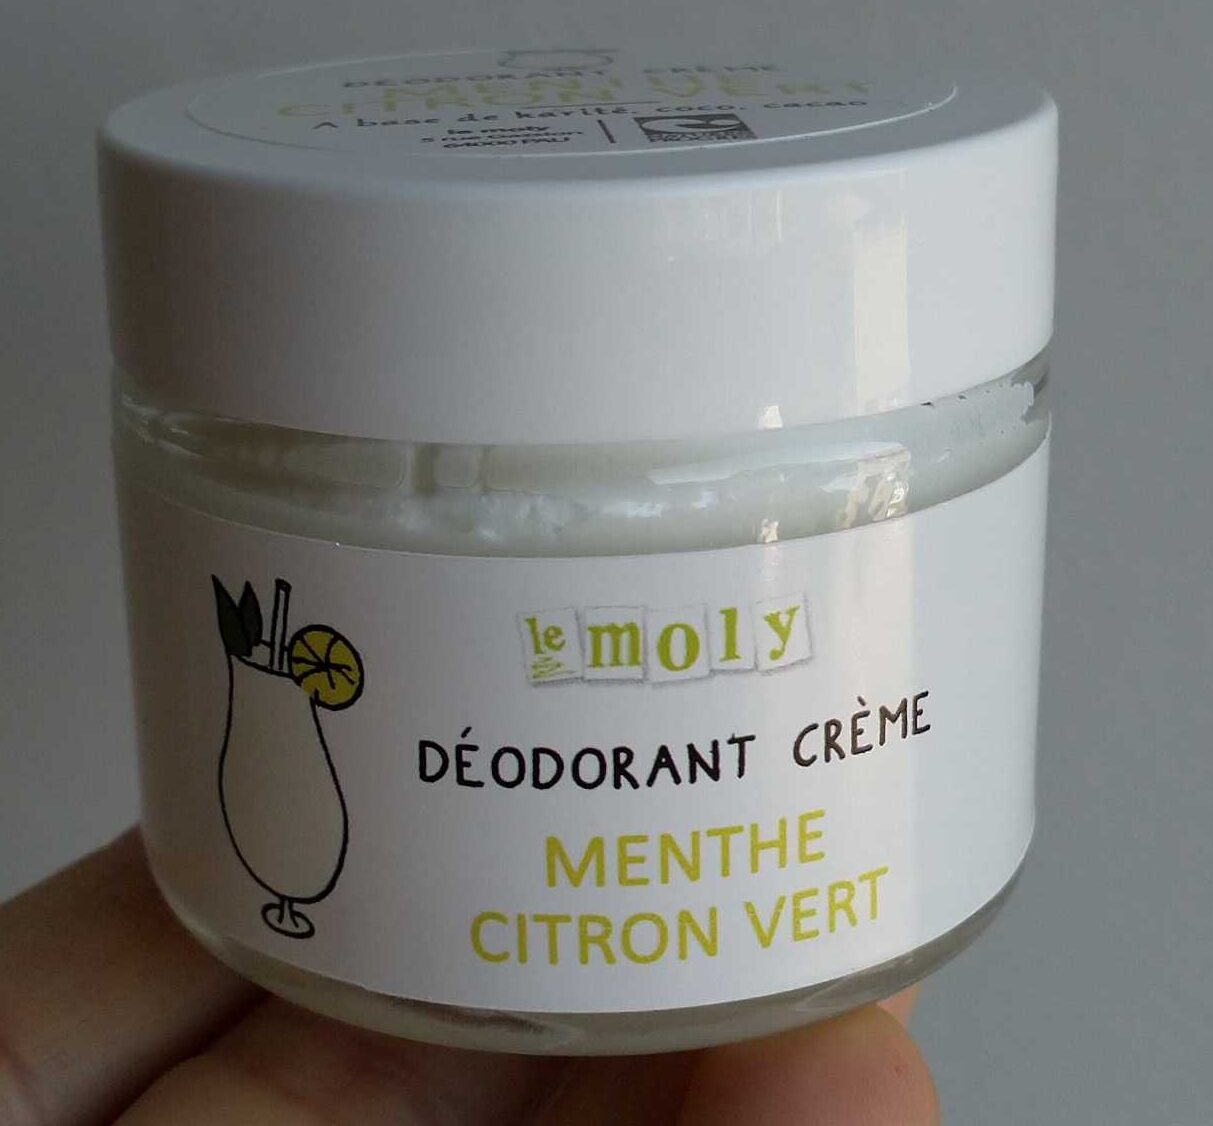 Déodorant crème menthe citron vert - Product - fr